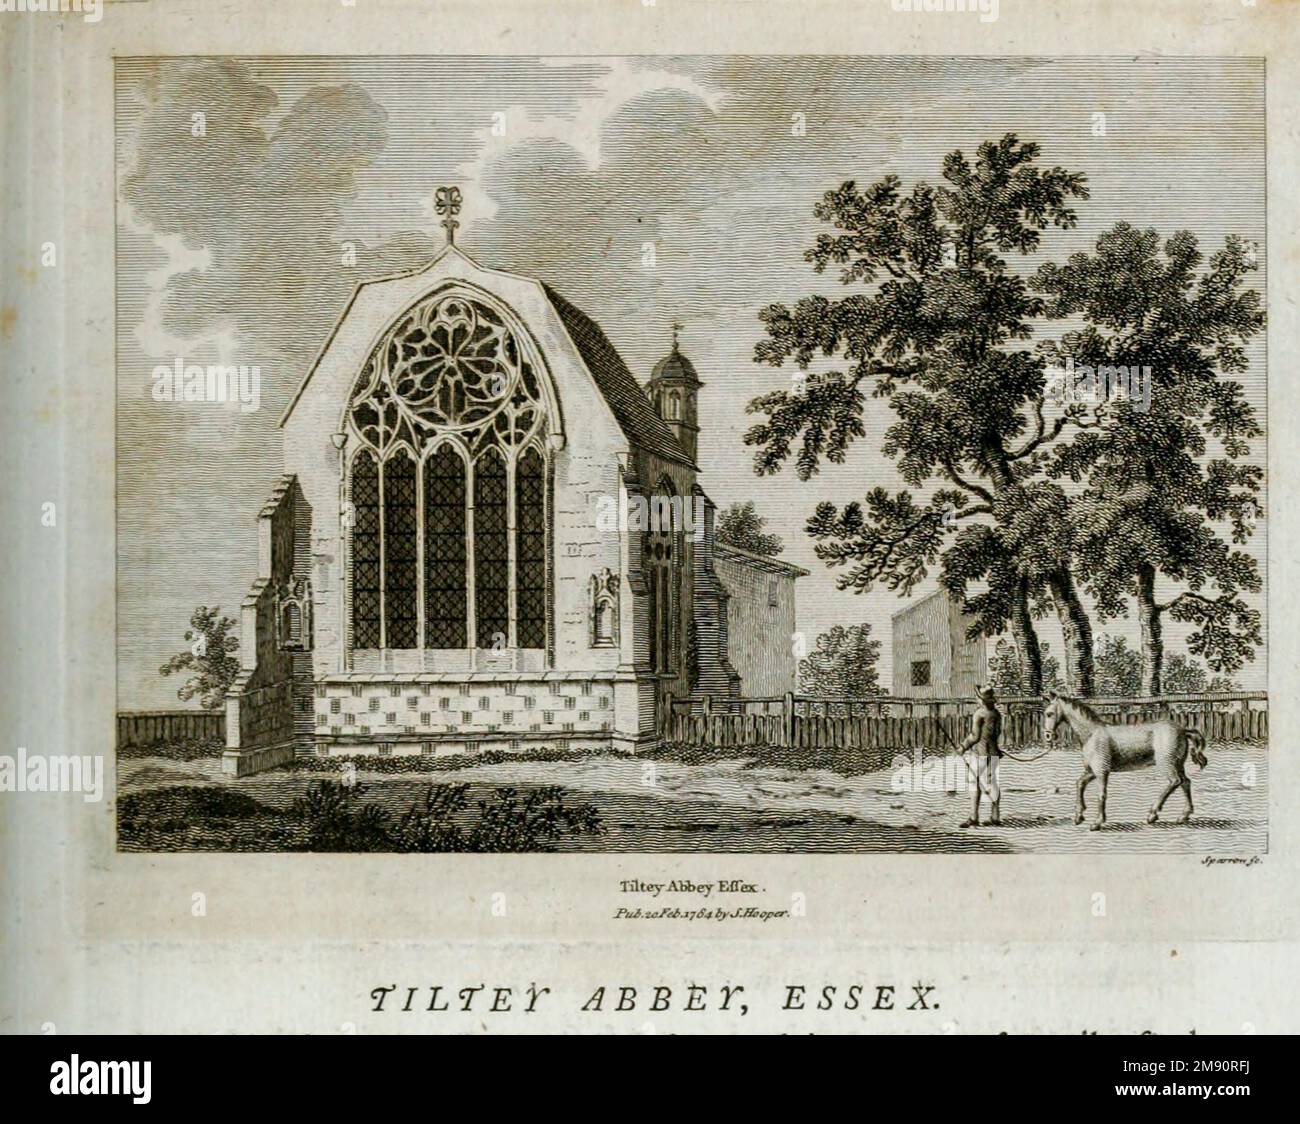 Tilty Abbey era un'abbazia cistercense a Tilty, Essex, Inghilterra. Fu sciolto il 3 marzo 1536. La cappella, con una navata costruita intorno al 1220, divenne chiesa parrocchiale ed è sopravvissuta, con successive modifiche ed estensioni. Dal libro ' supplemento alle antichità dell'Inghilterra e del Galles ' di Francis Grose, data di pubblicazione 1777 Foto Stock